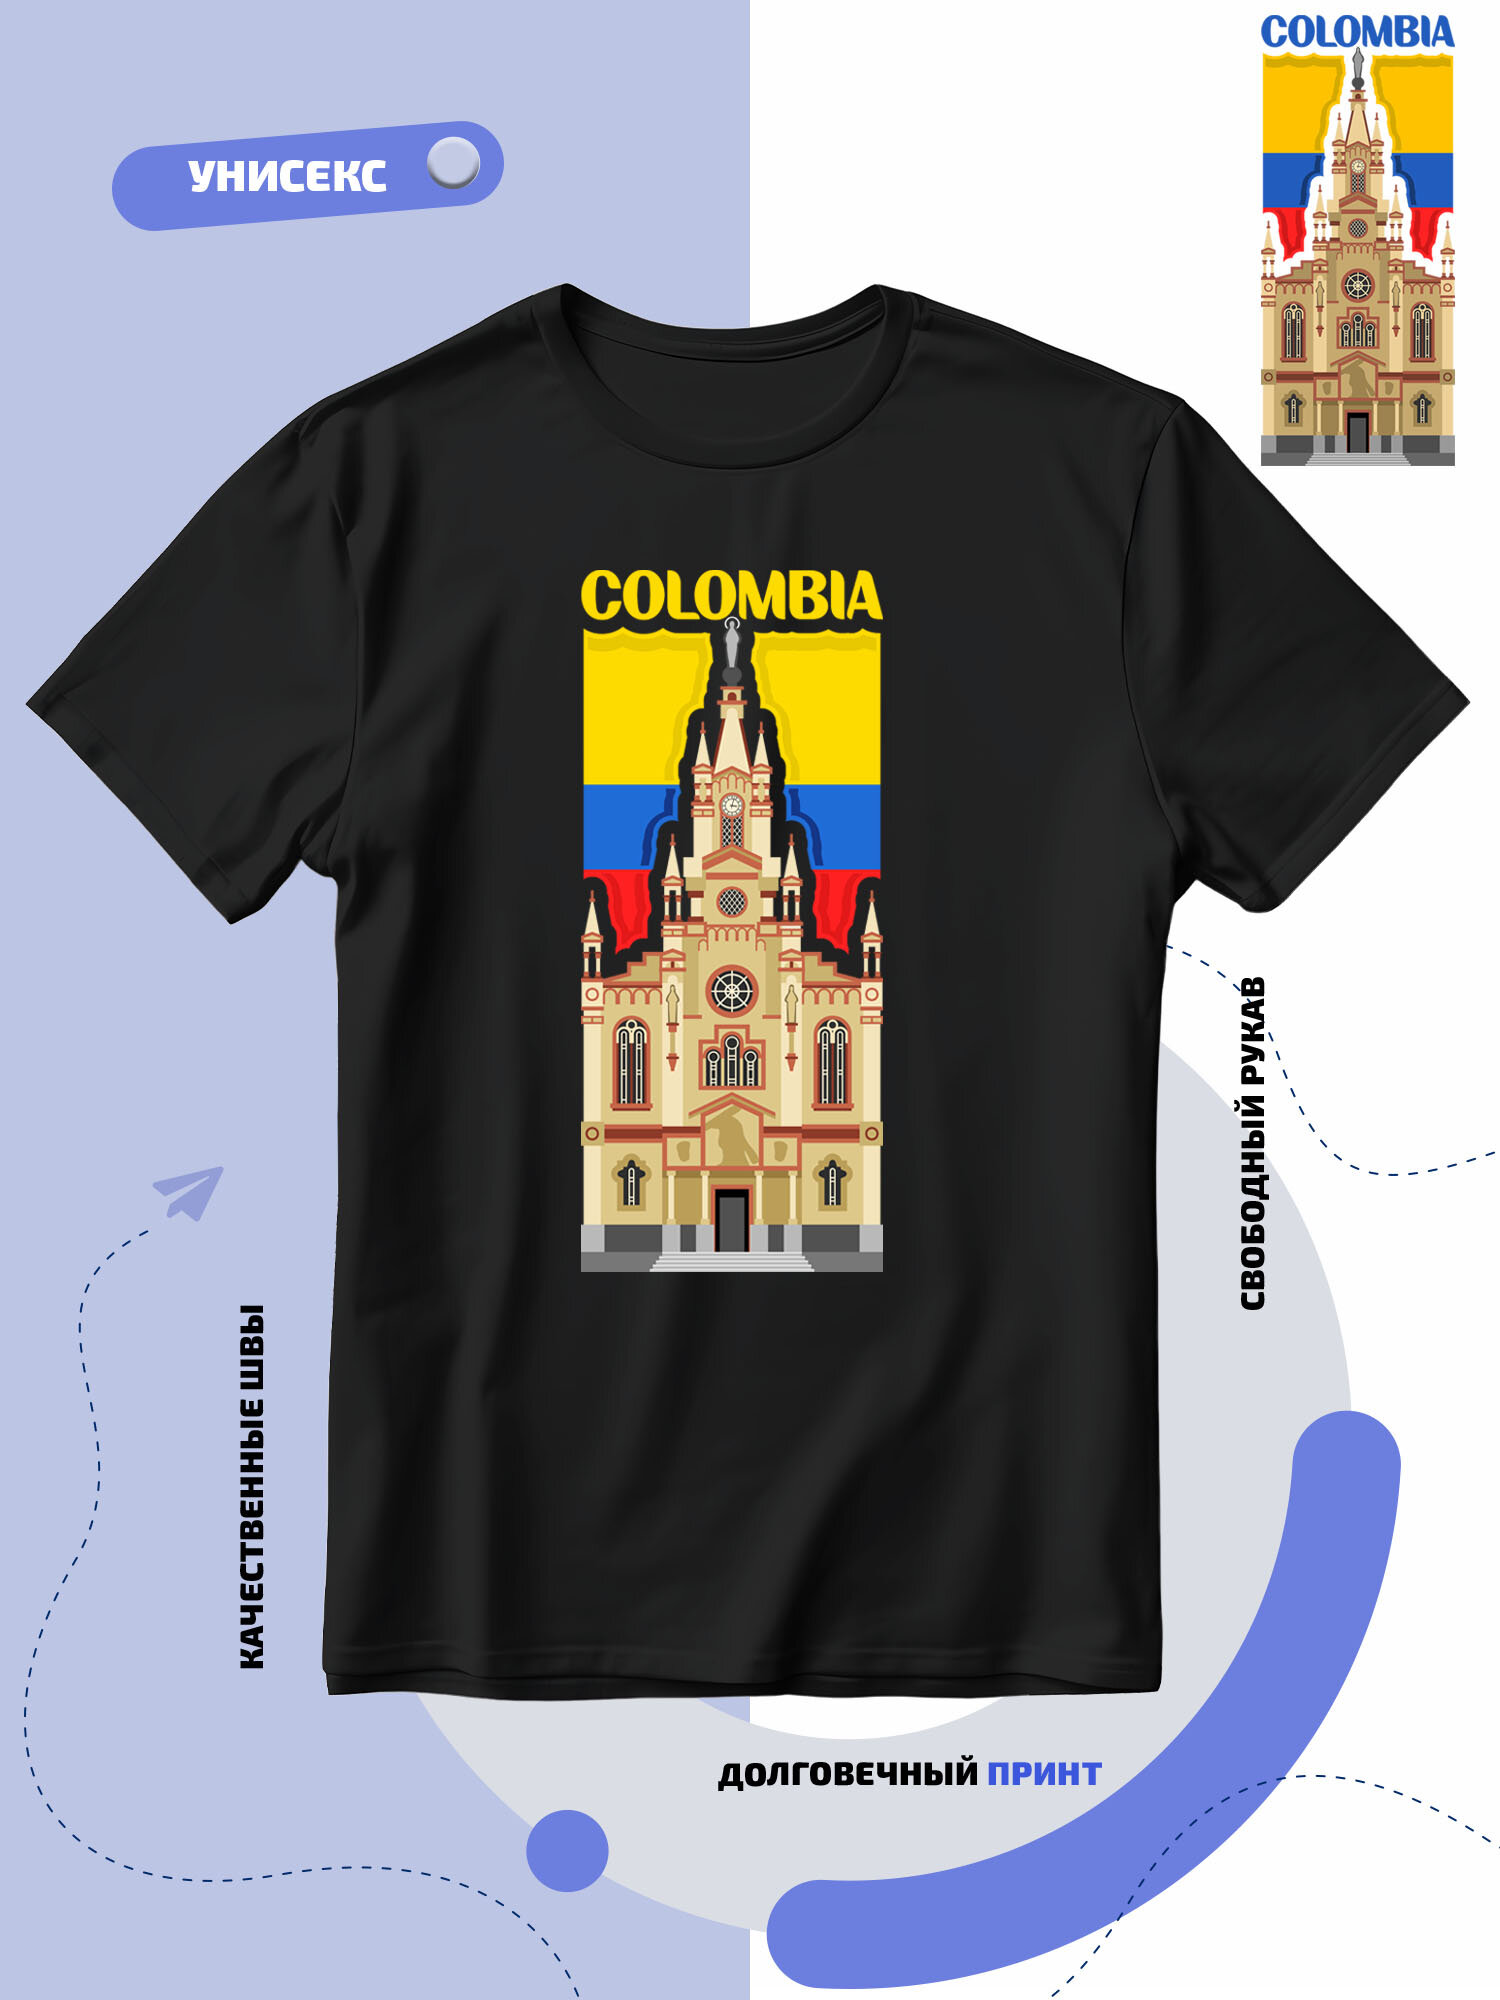 Футболка SMAIL-P флаг Колумбии-Colombia и достопримечательность